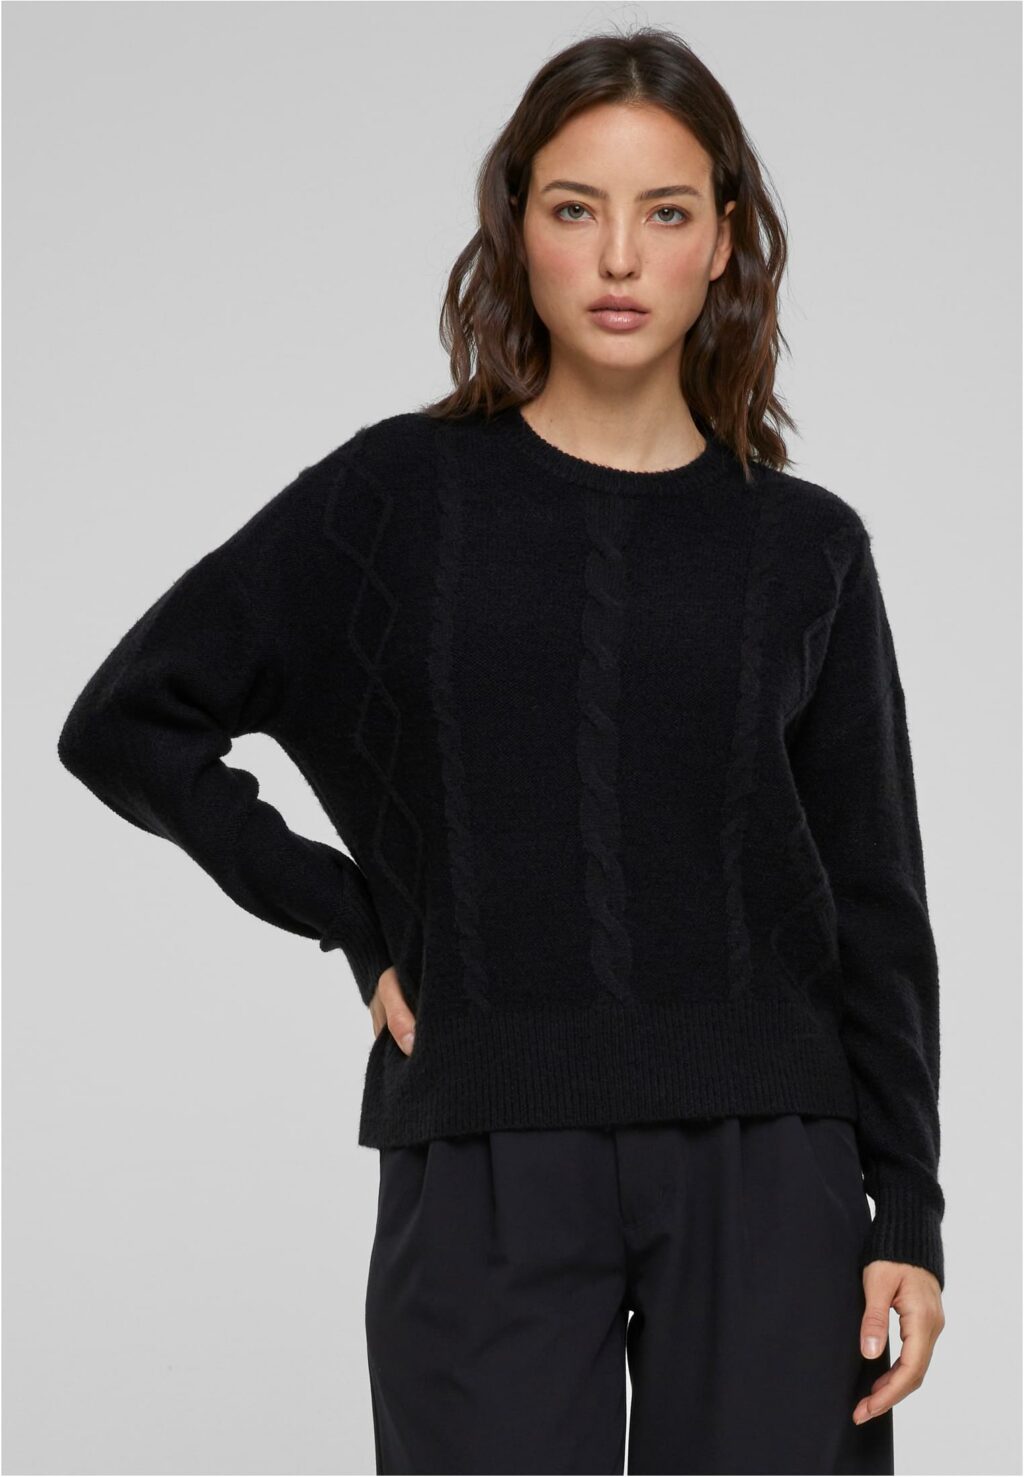 Urban Classics Ladies Cabel Knit Sweater black TB6139